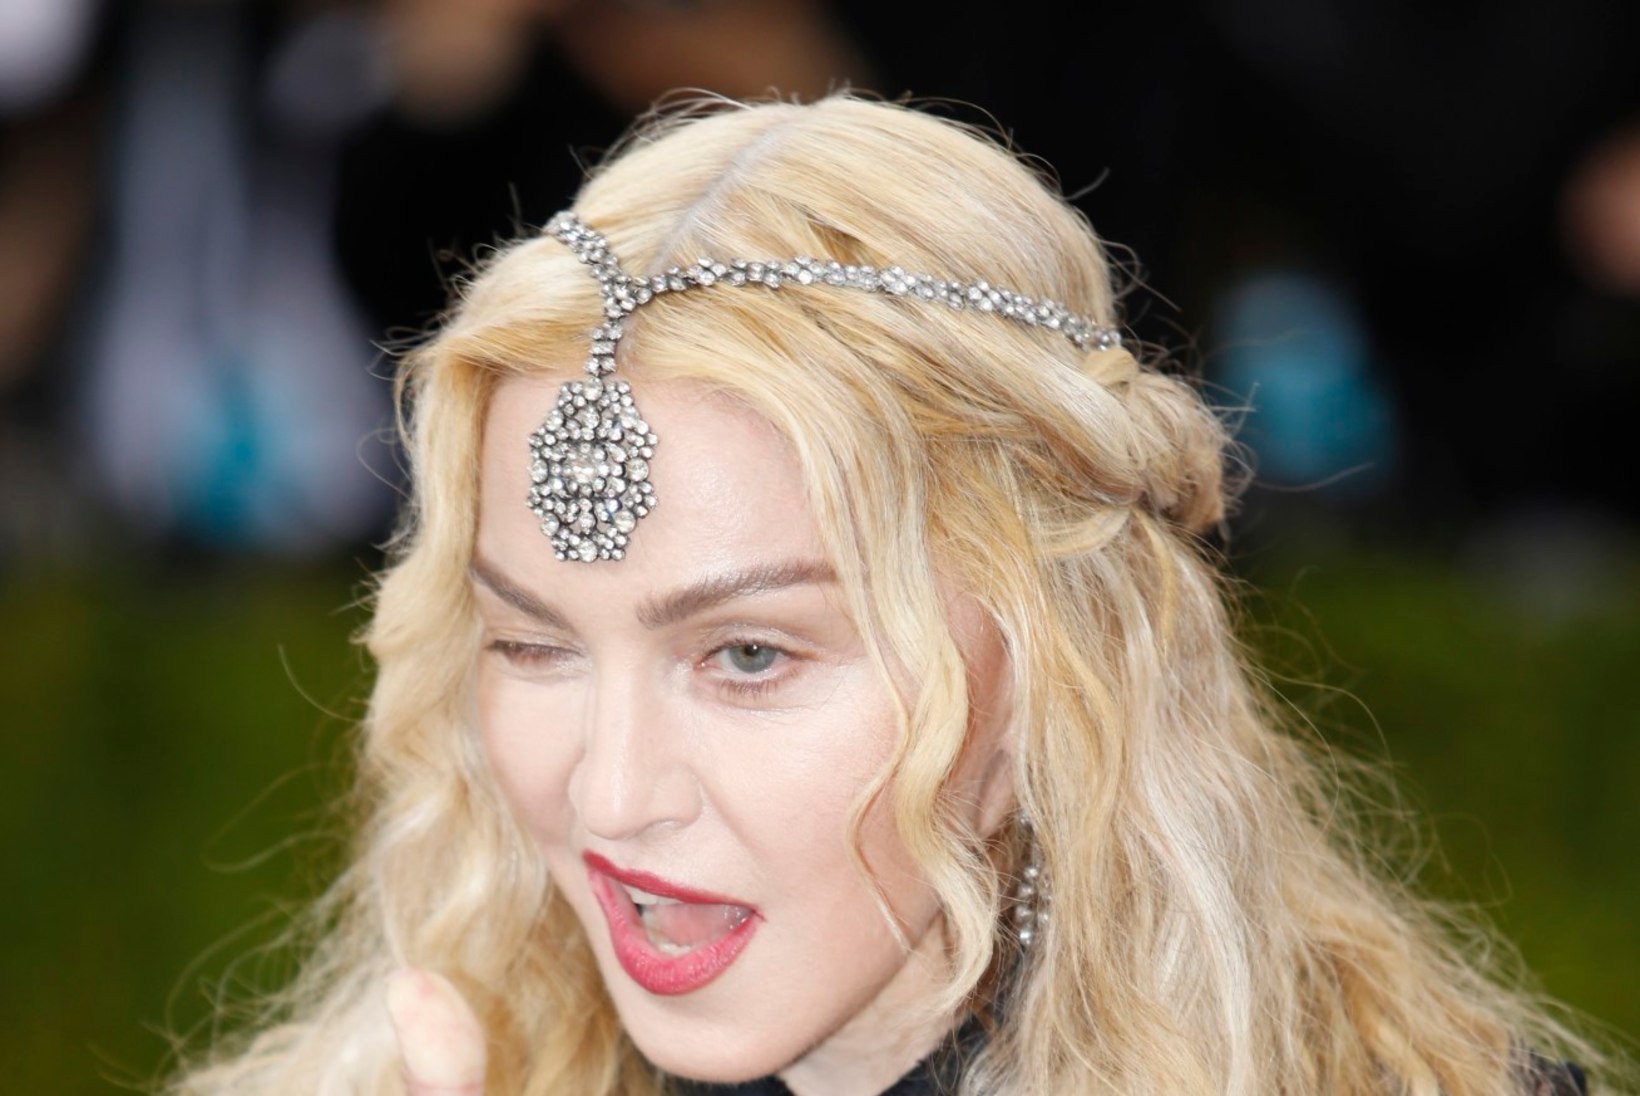 59aastane Madonna jäi paparatsole vahele kahtlaselt punnis palgetega